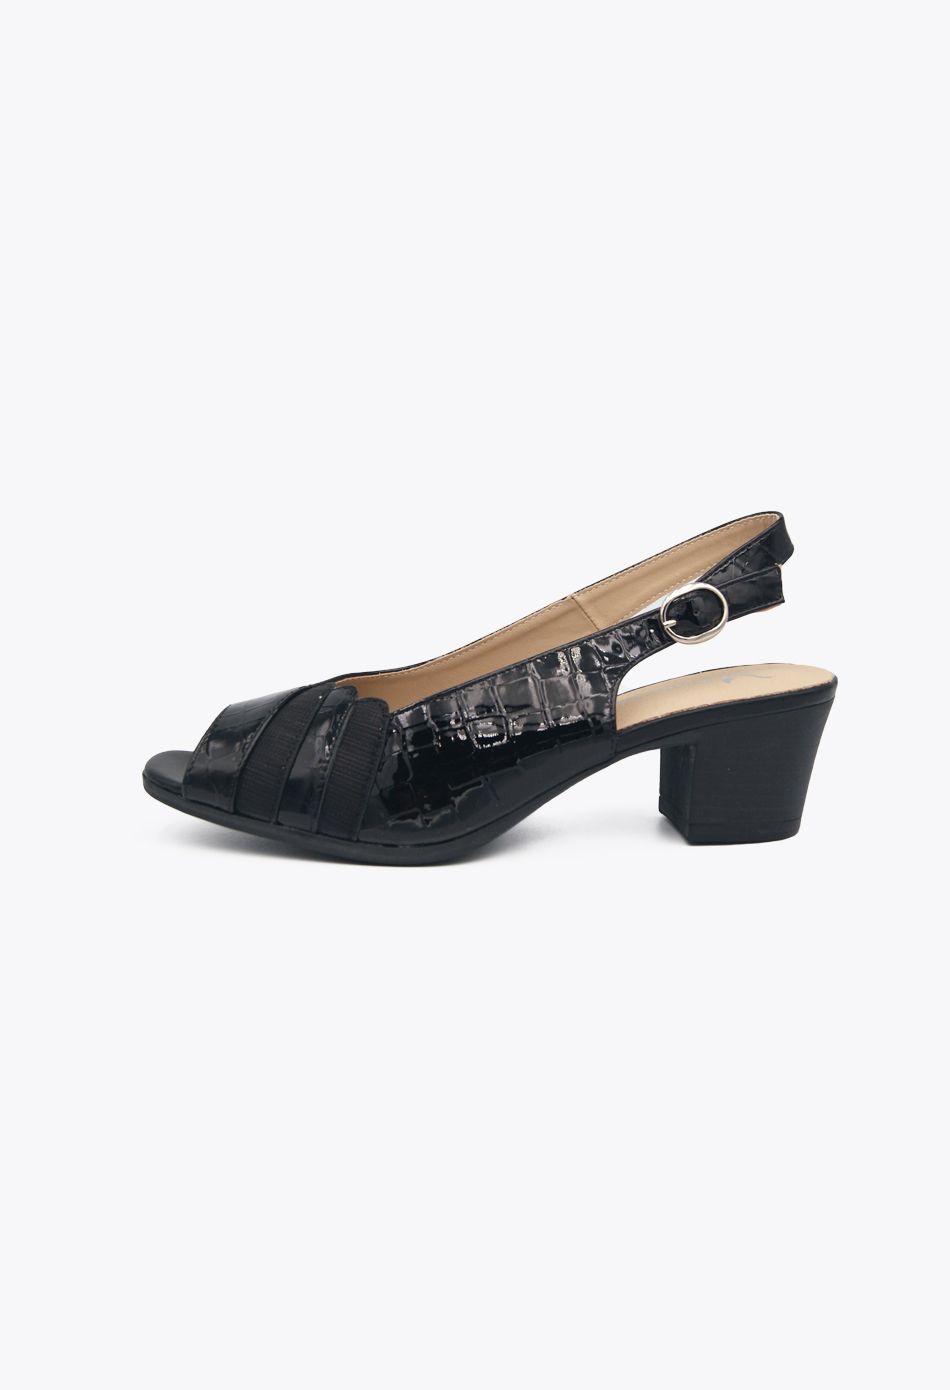 Suede Γυναικεία Πέδιλα με Χοντρό Χαμηλό Τακούνι Μαύρο / jsz-53-black Ανοιχτά Παπούτσια joya.gr